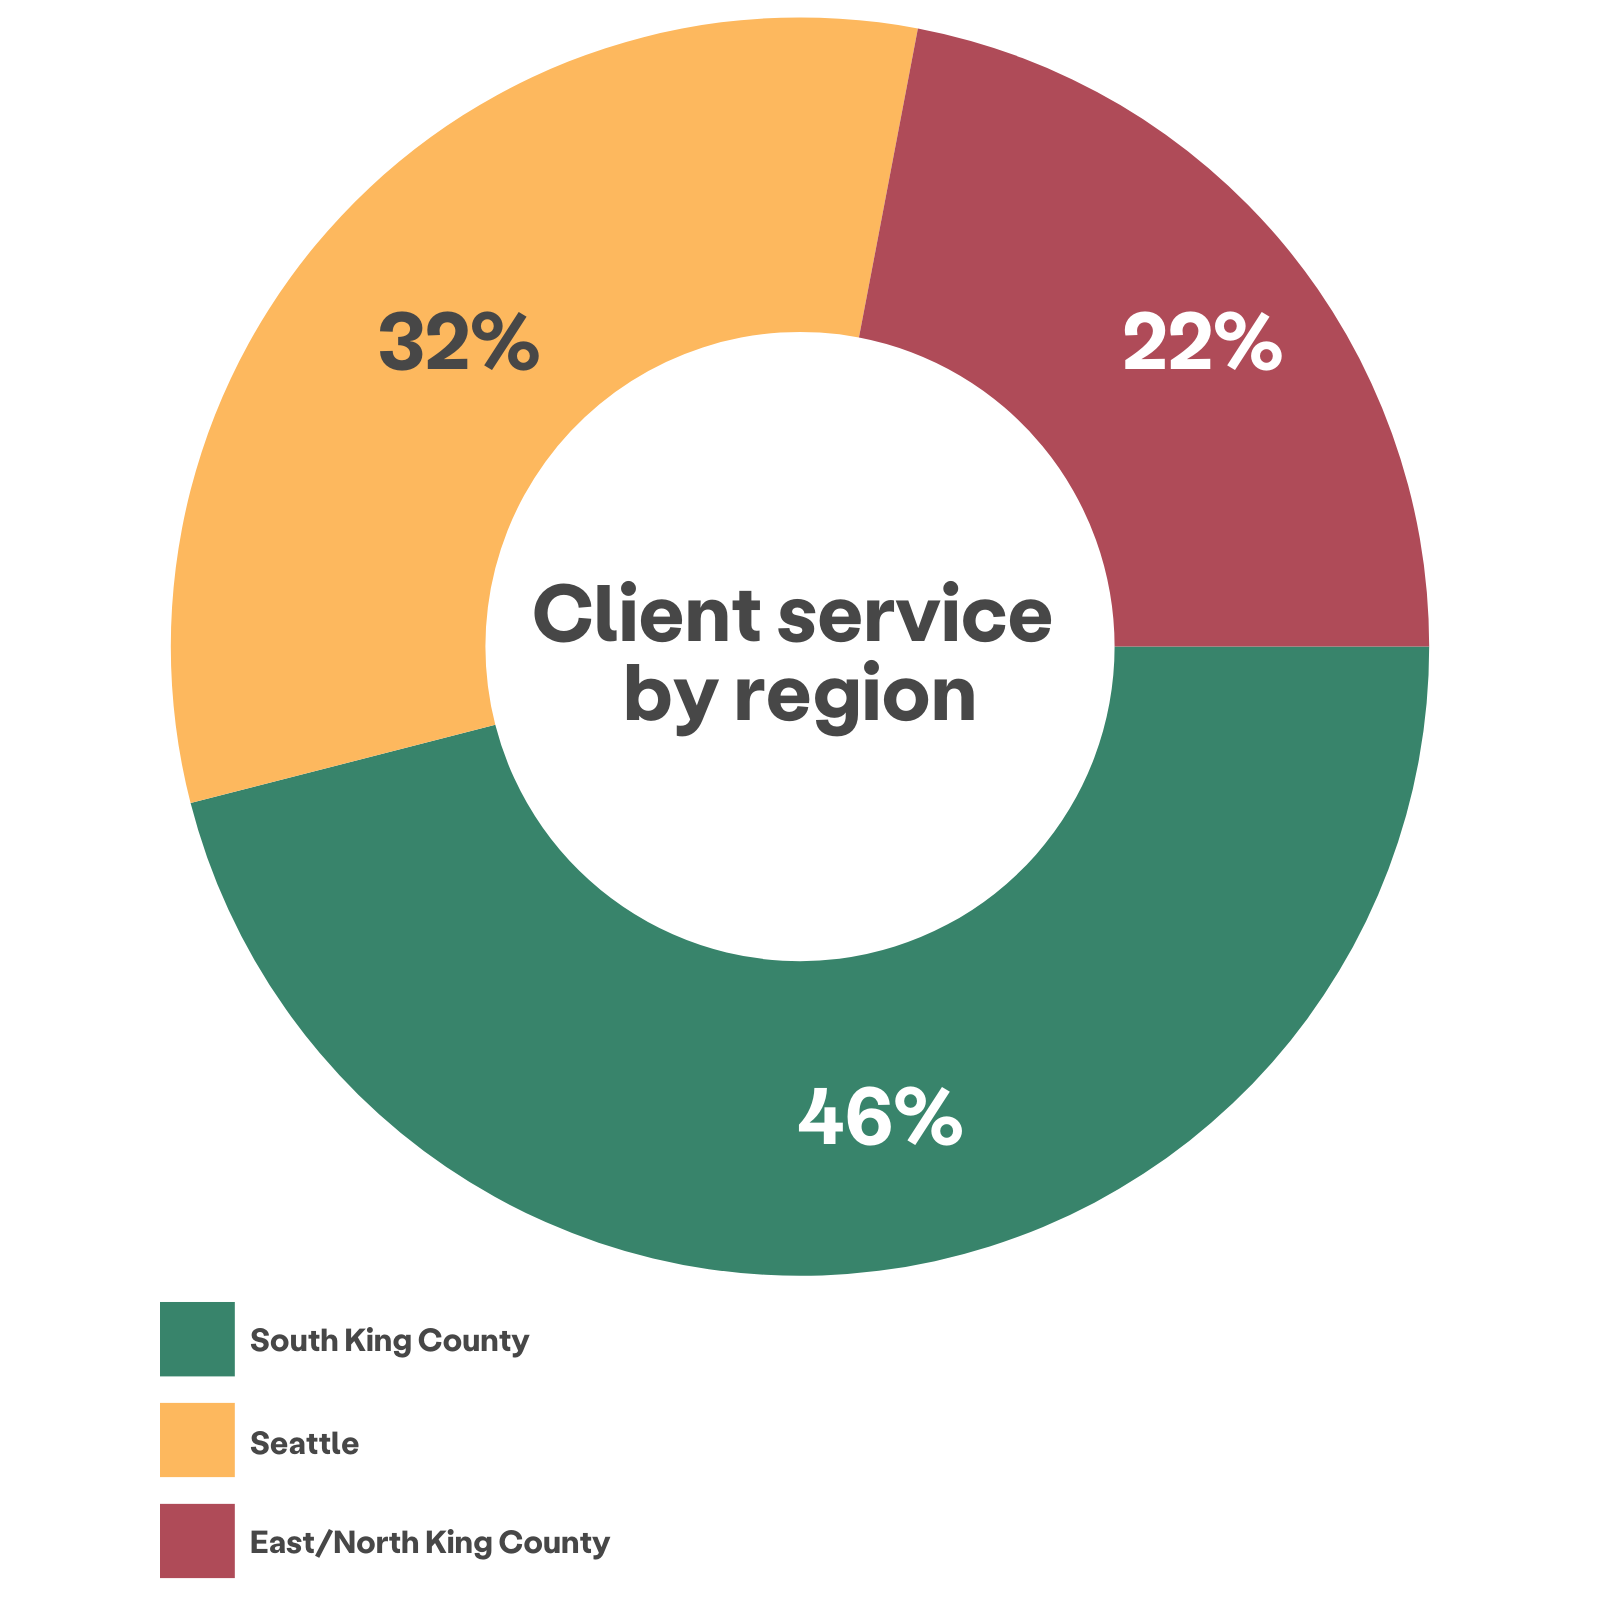 按地区划分的客户服务环形图显示，46% 来自南金县，32% 来自西雅图，22% 来自东/北金县